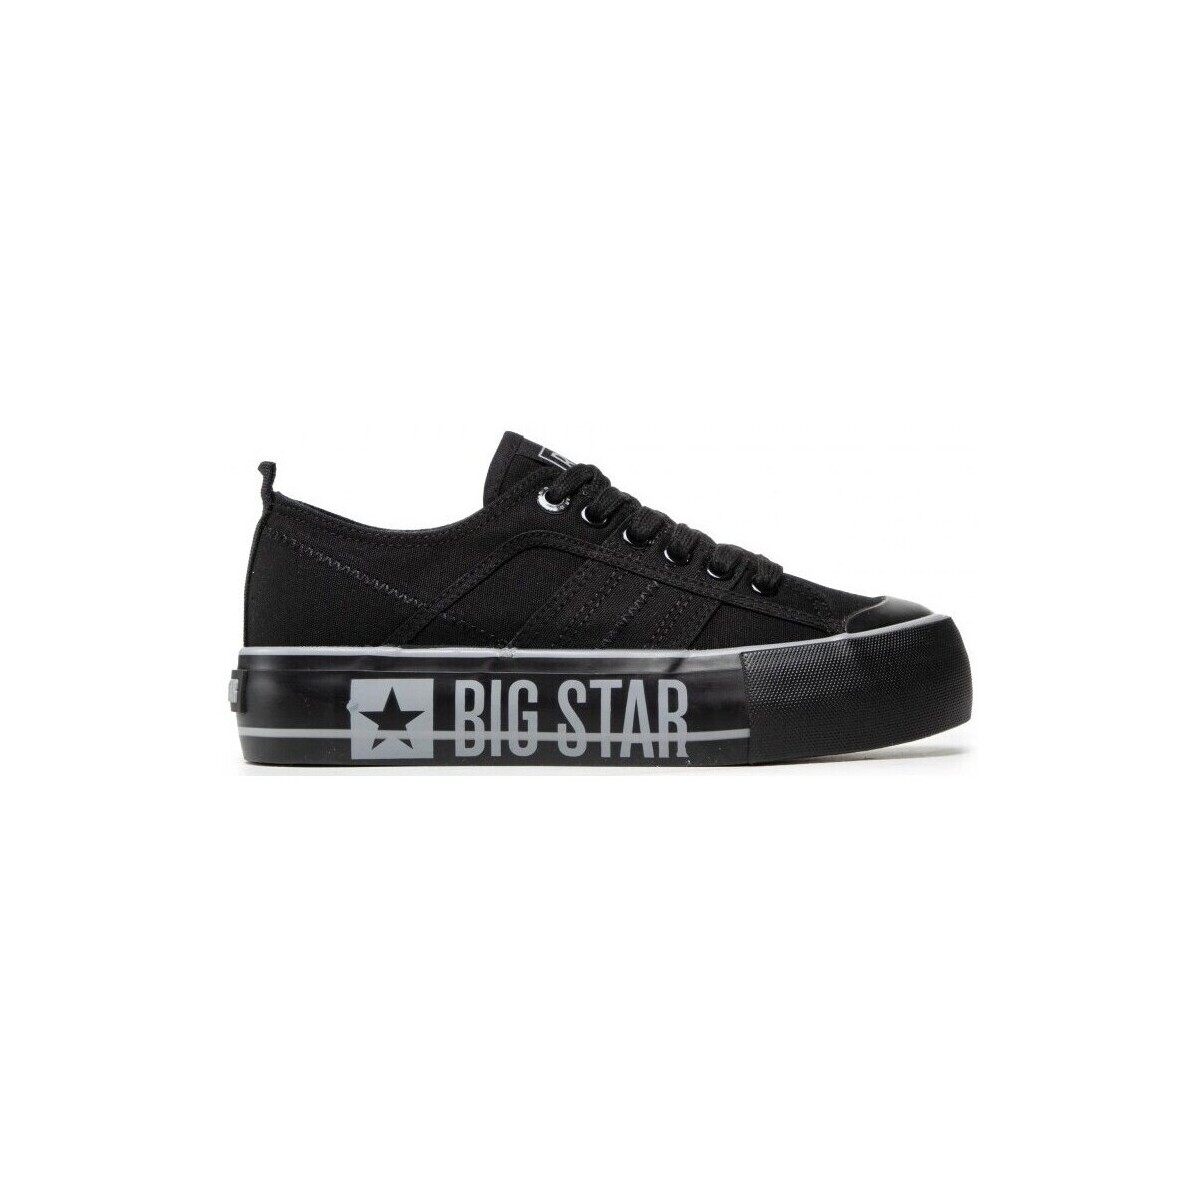 Pantofi Bărbați Pantofi sport Casual Big Star JJ274053 Negru